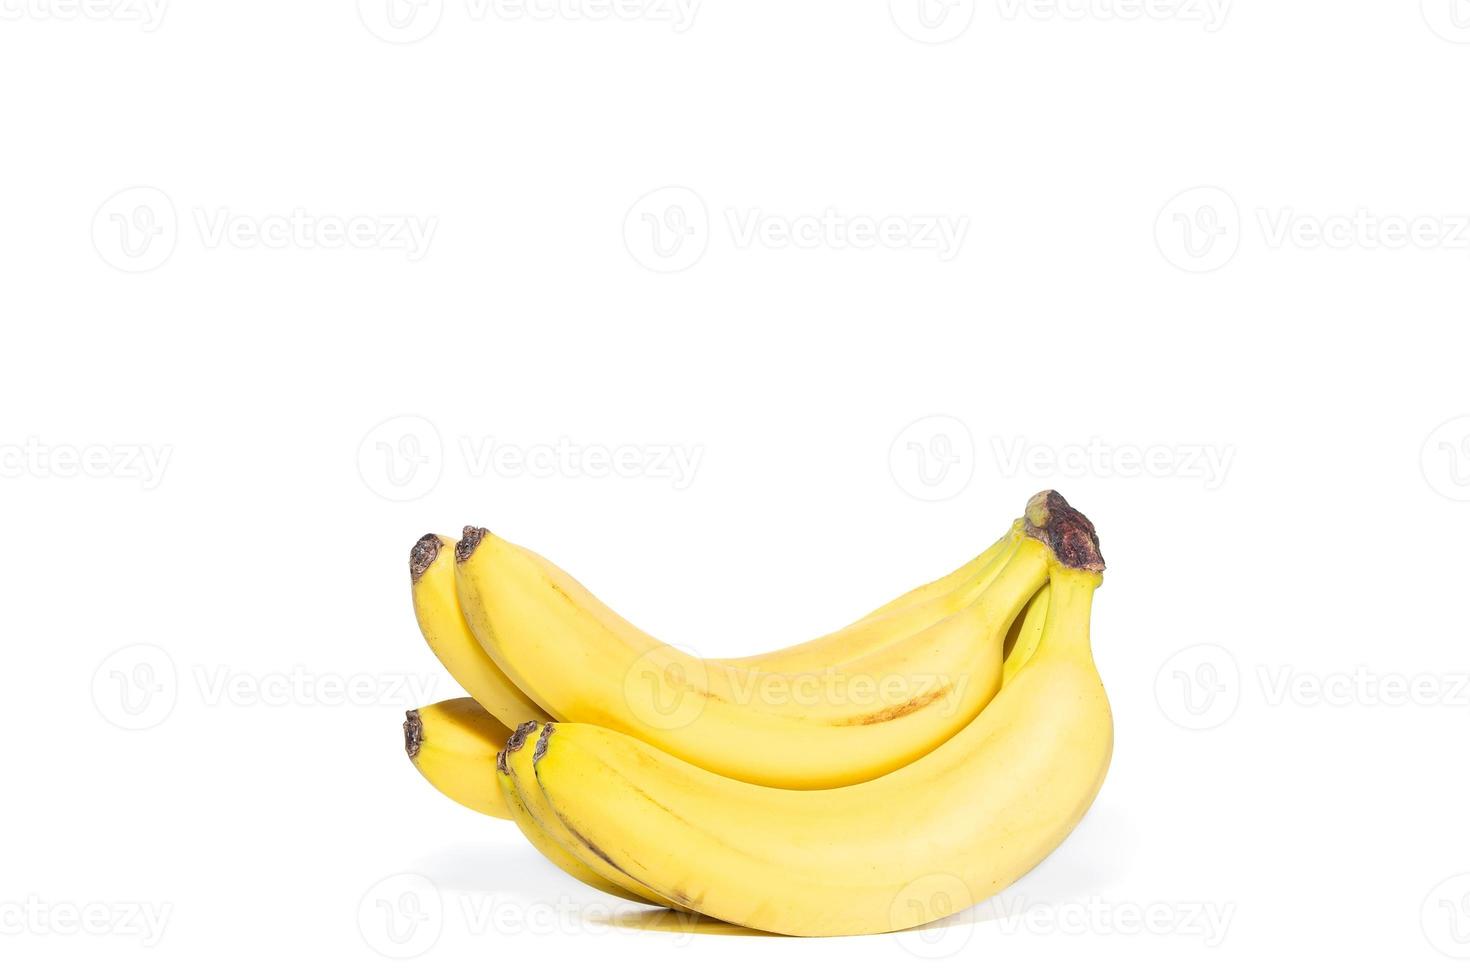 cacho de bananas isolado no traçado de recorte de fundo branco foto